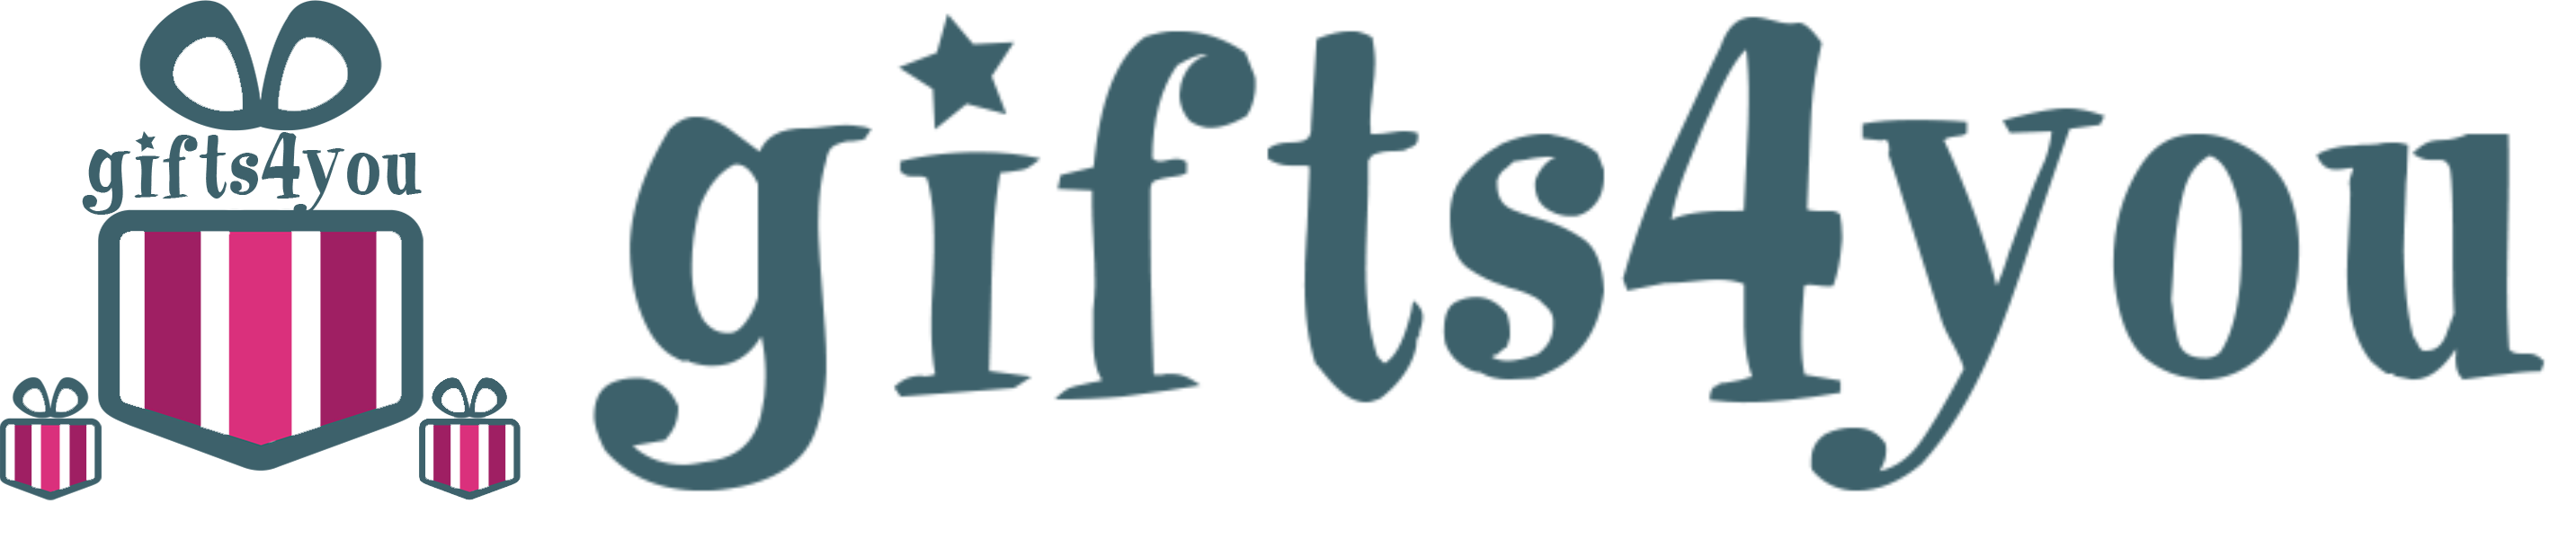 GiftShop logo